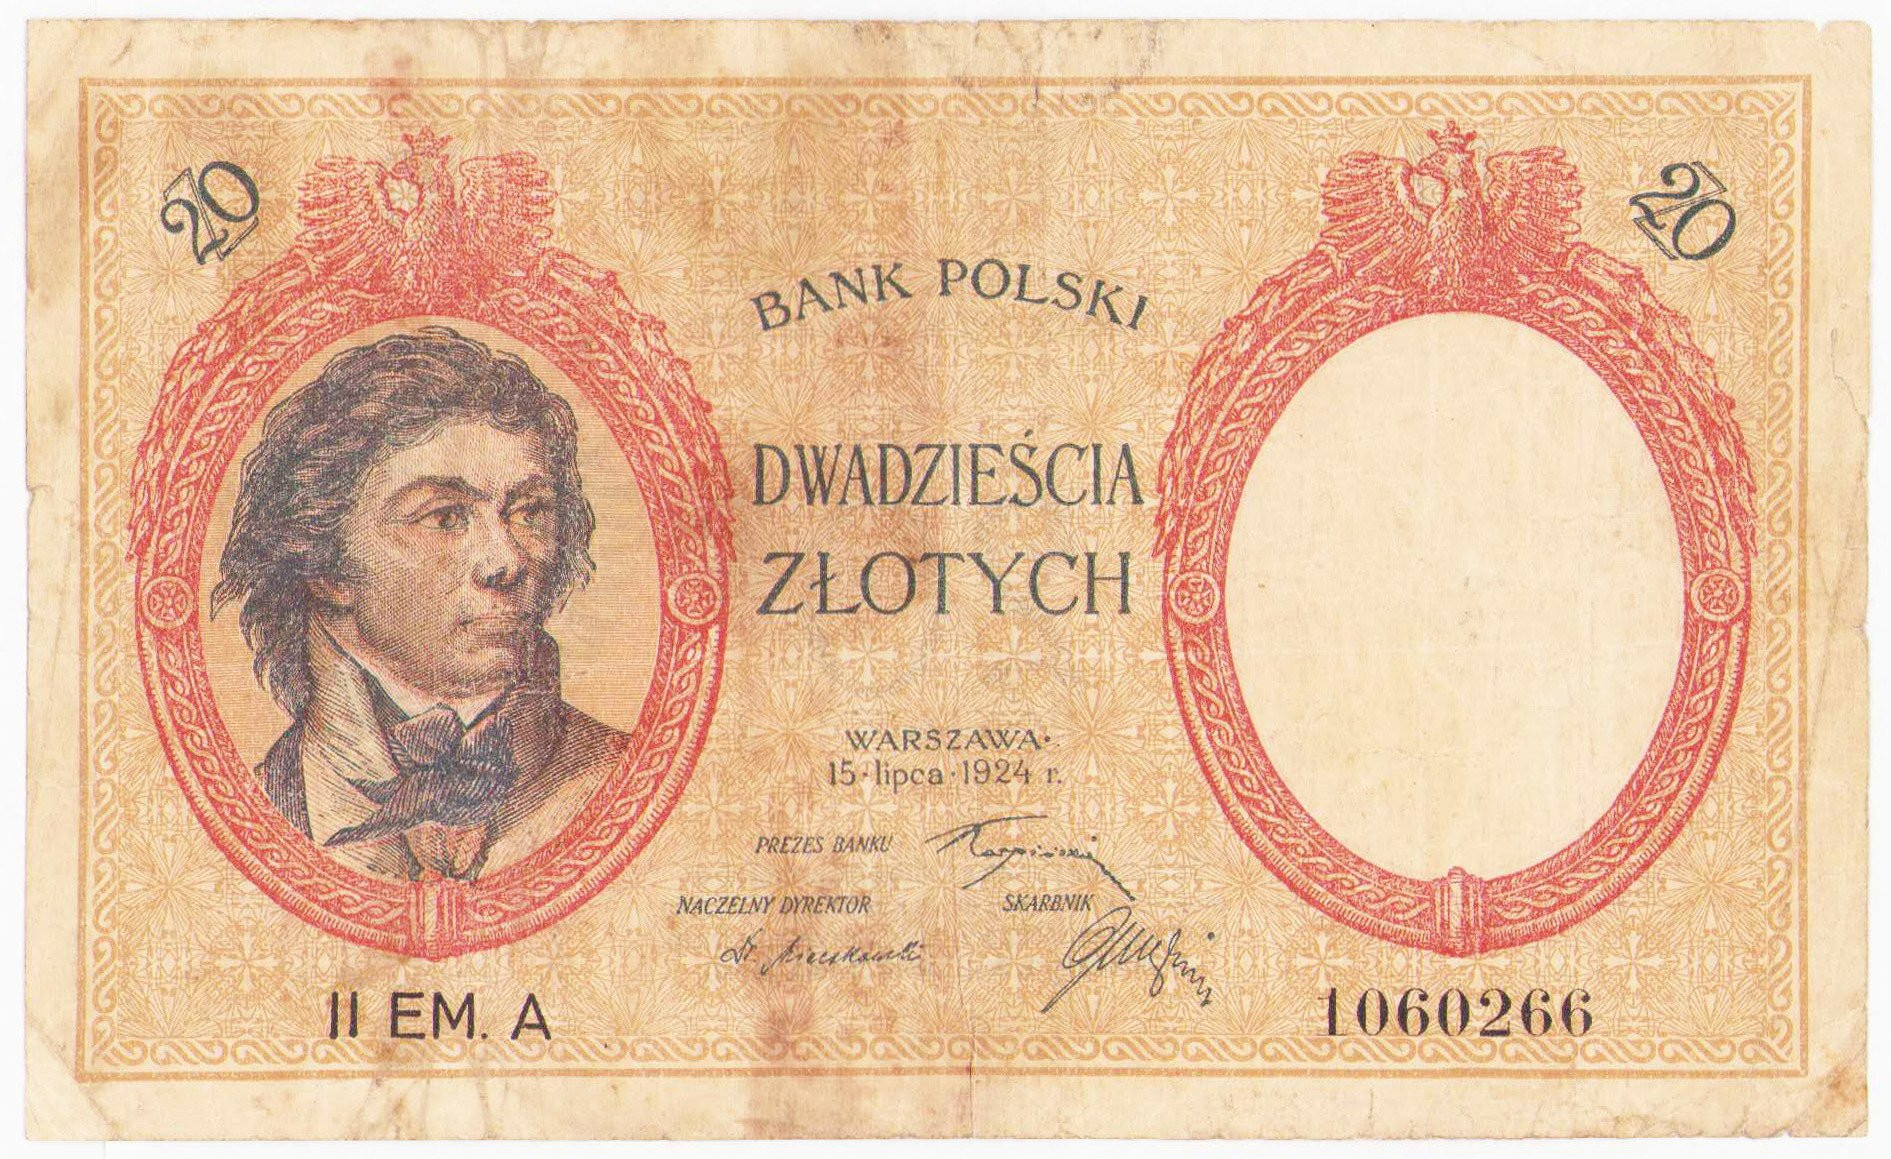 20 złotych 1924 Kościuszko II EM. A – RZADKOŚĆ 